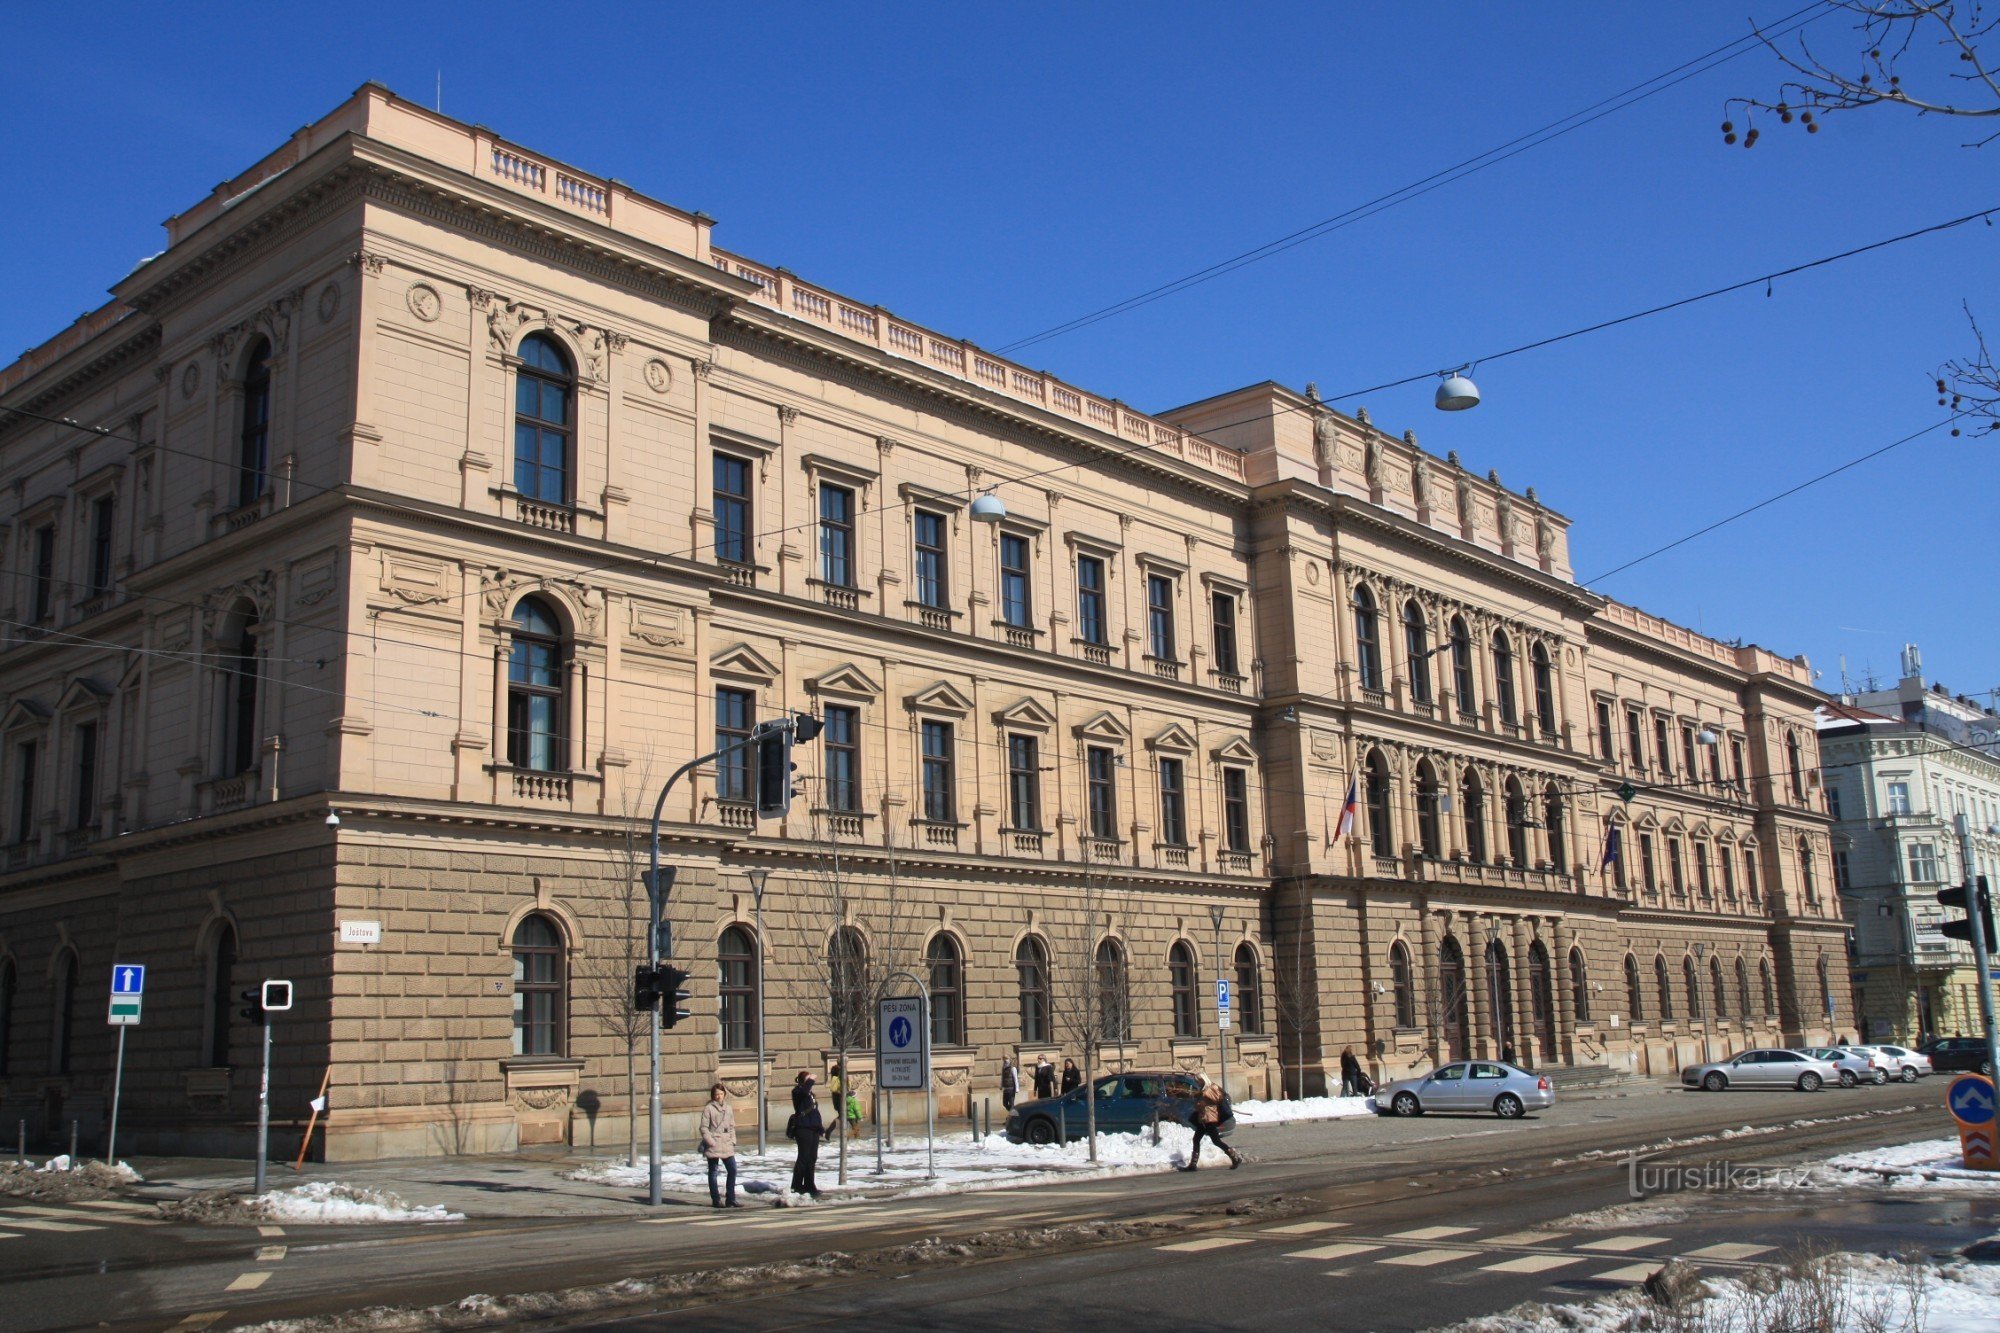 ヨシュトヴァ通りにある憲法裁判所の建物